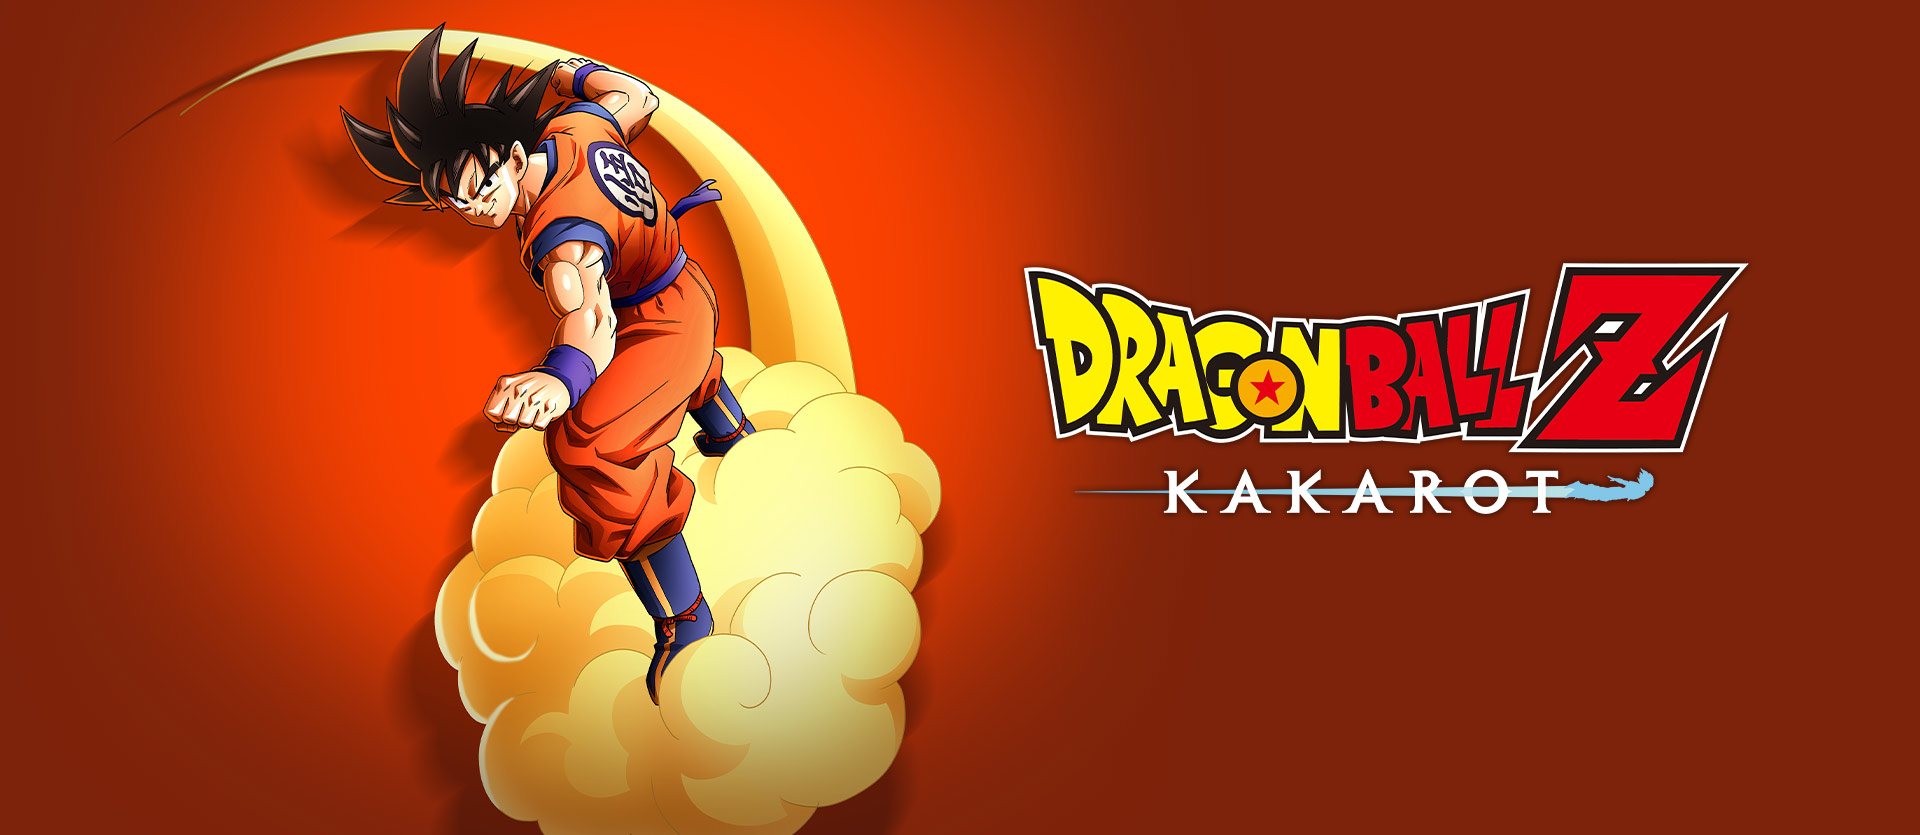 🐉 DRAGON BALL Z: KAKAROT 🔑 Standard Edition 🔥 Steam